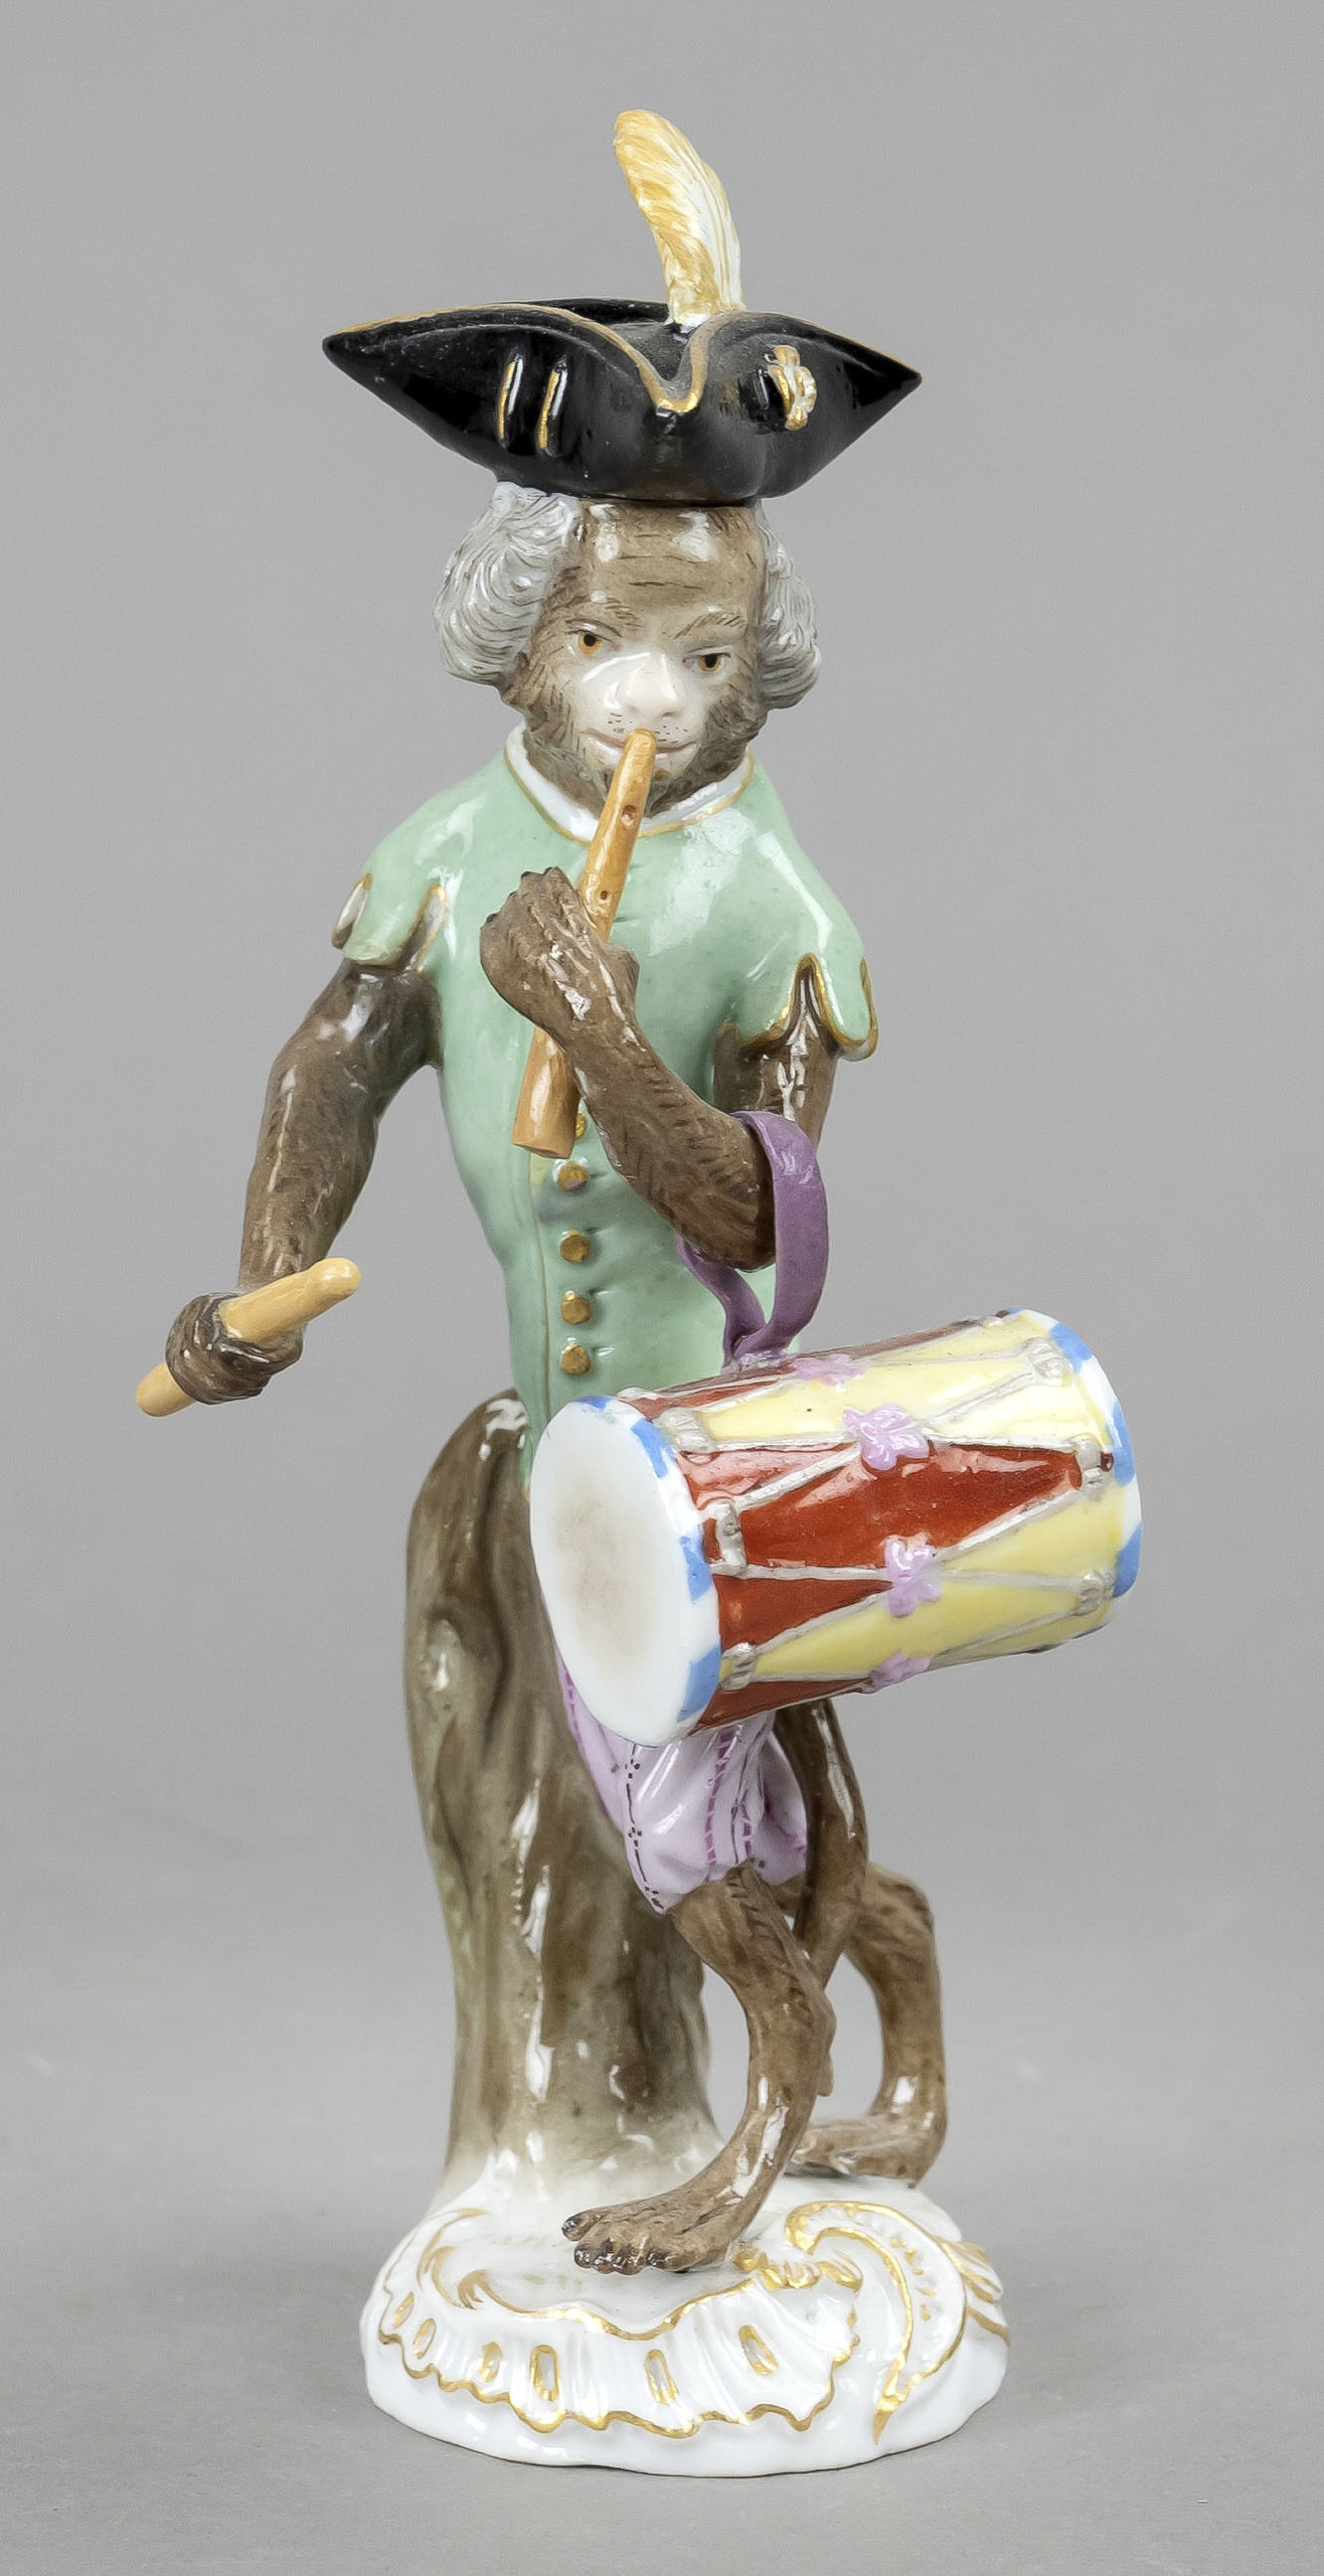 Monkey as drummer from the Monkey Chapel, Meissen, mark 1850-1924, 2nd choice, designed by Johann